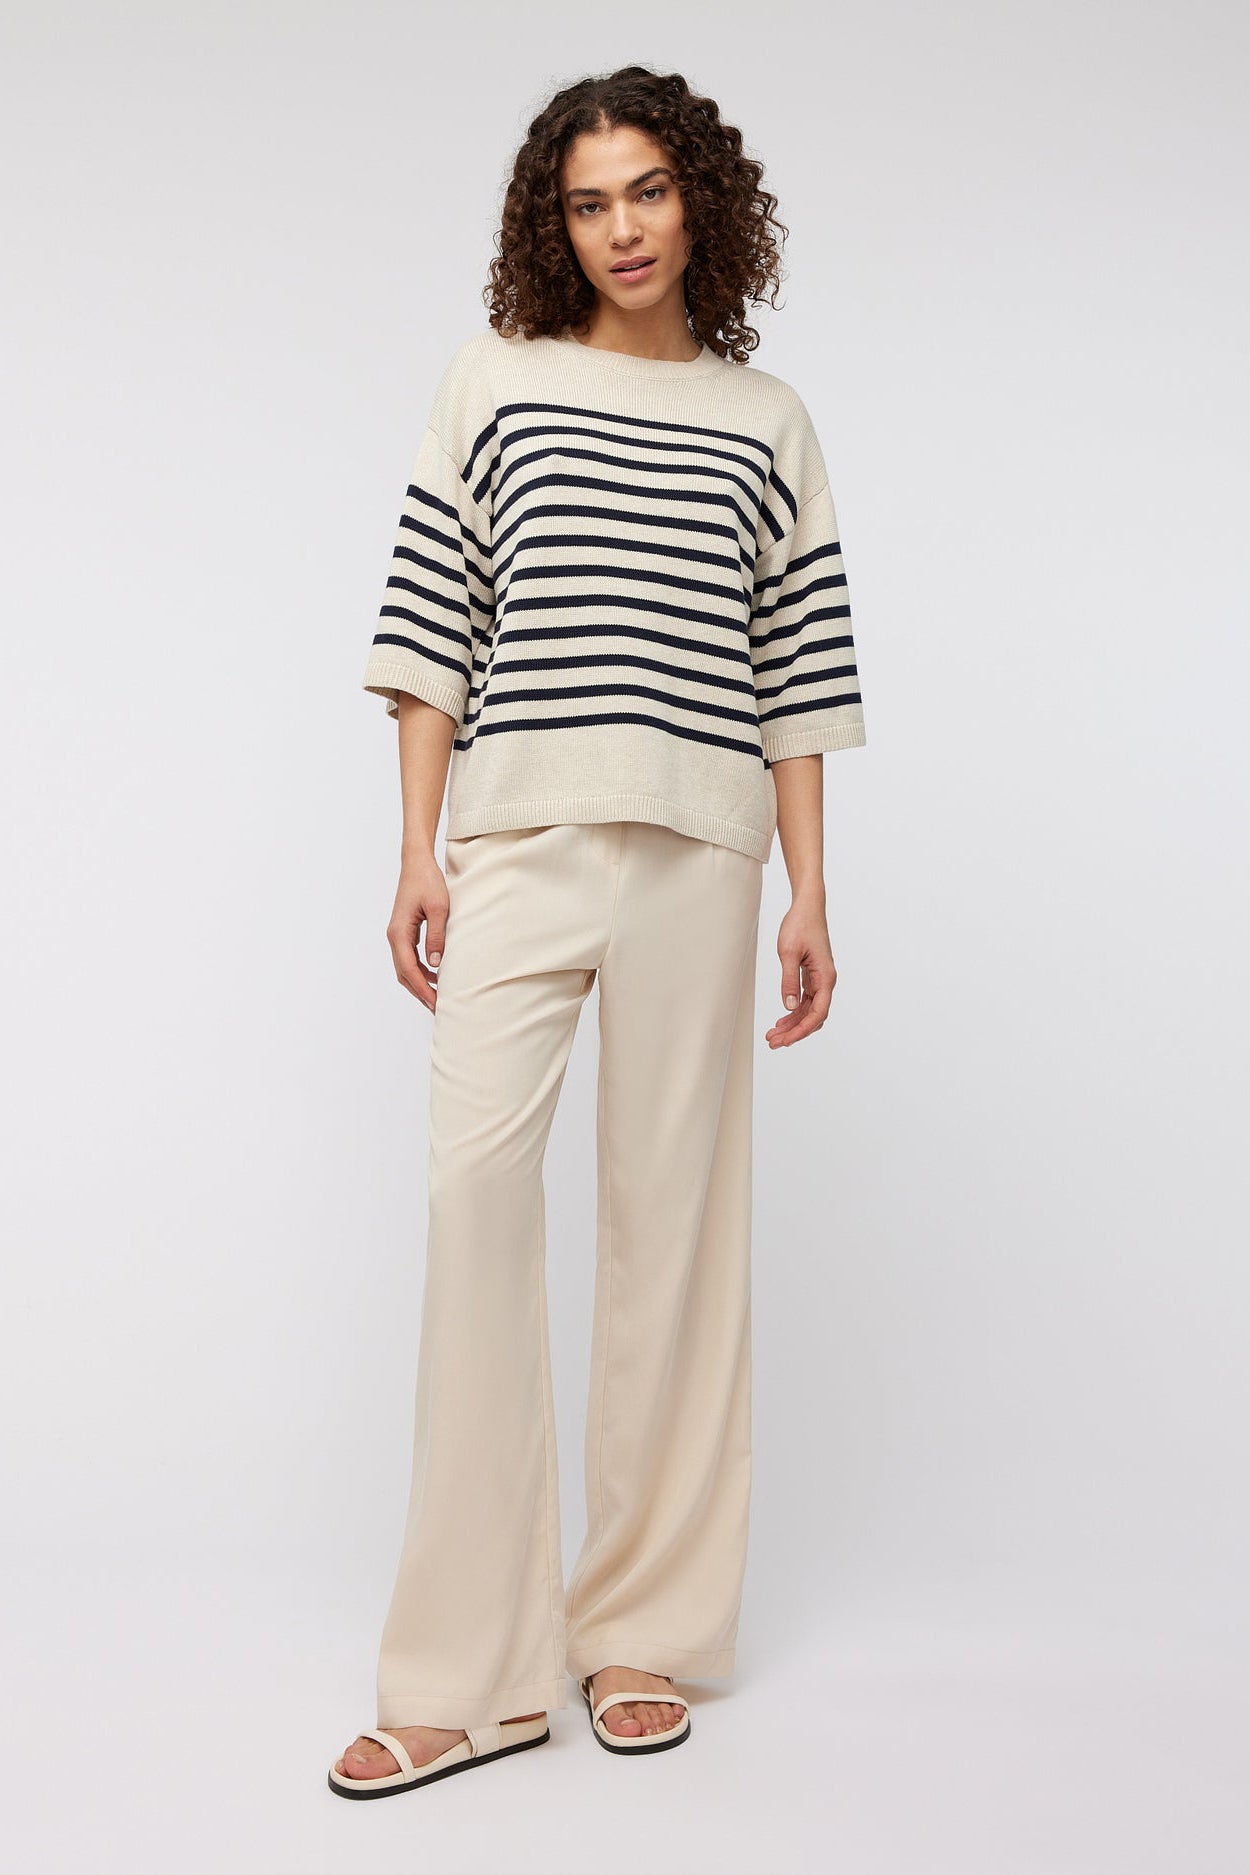 Nanda Pullover - Sand Stripe